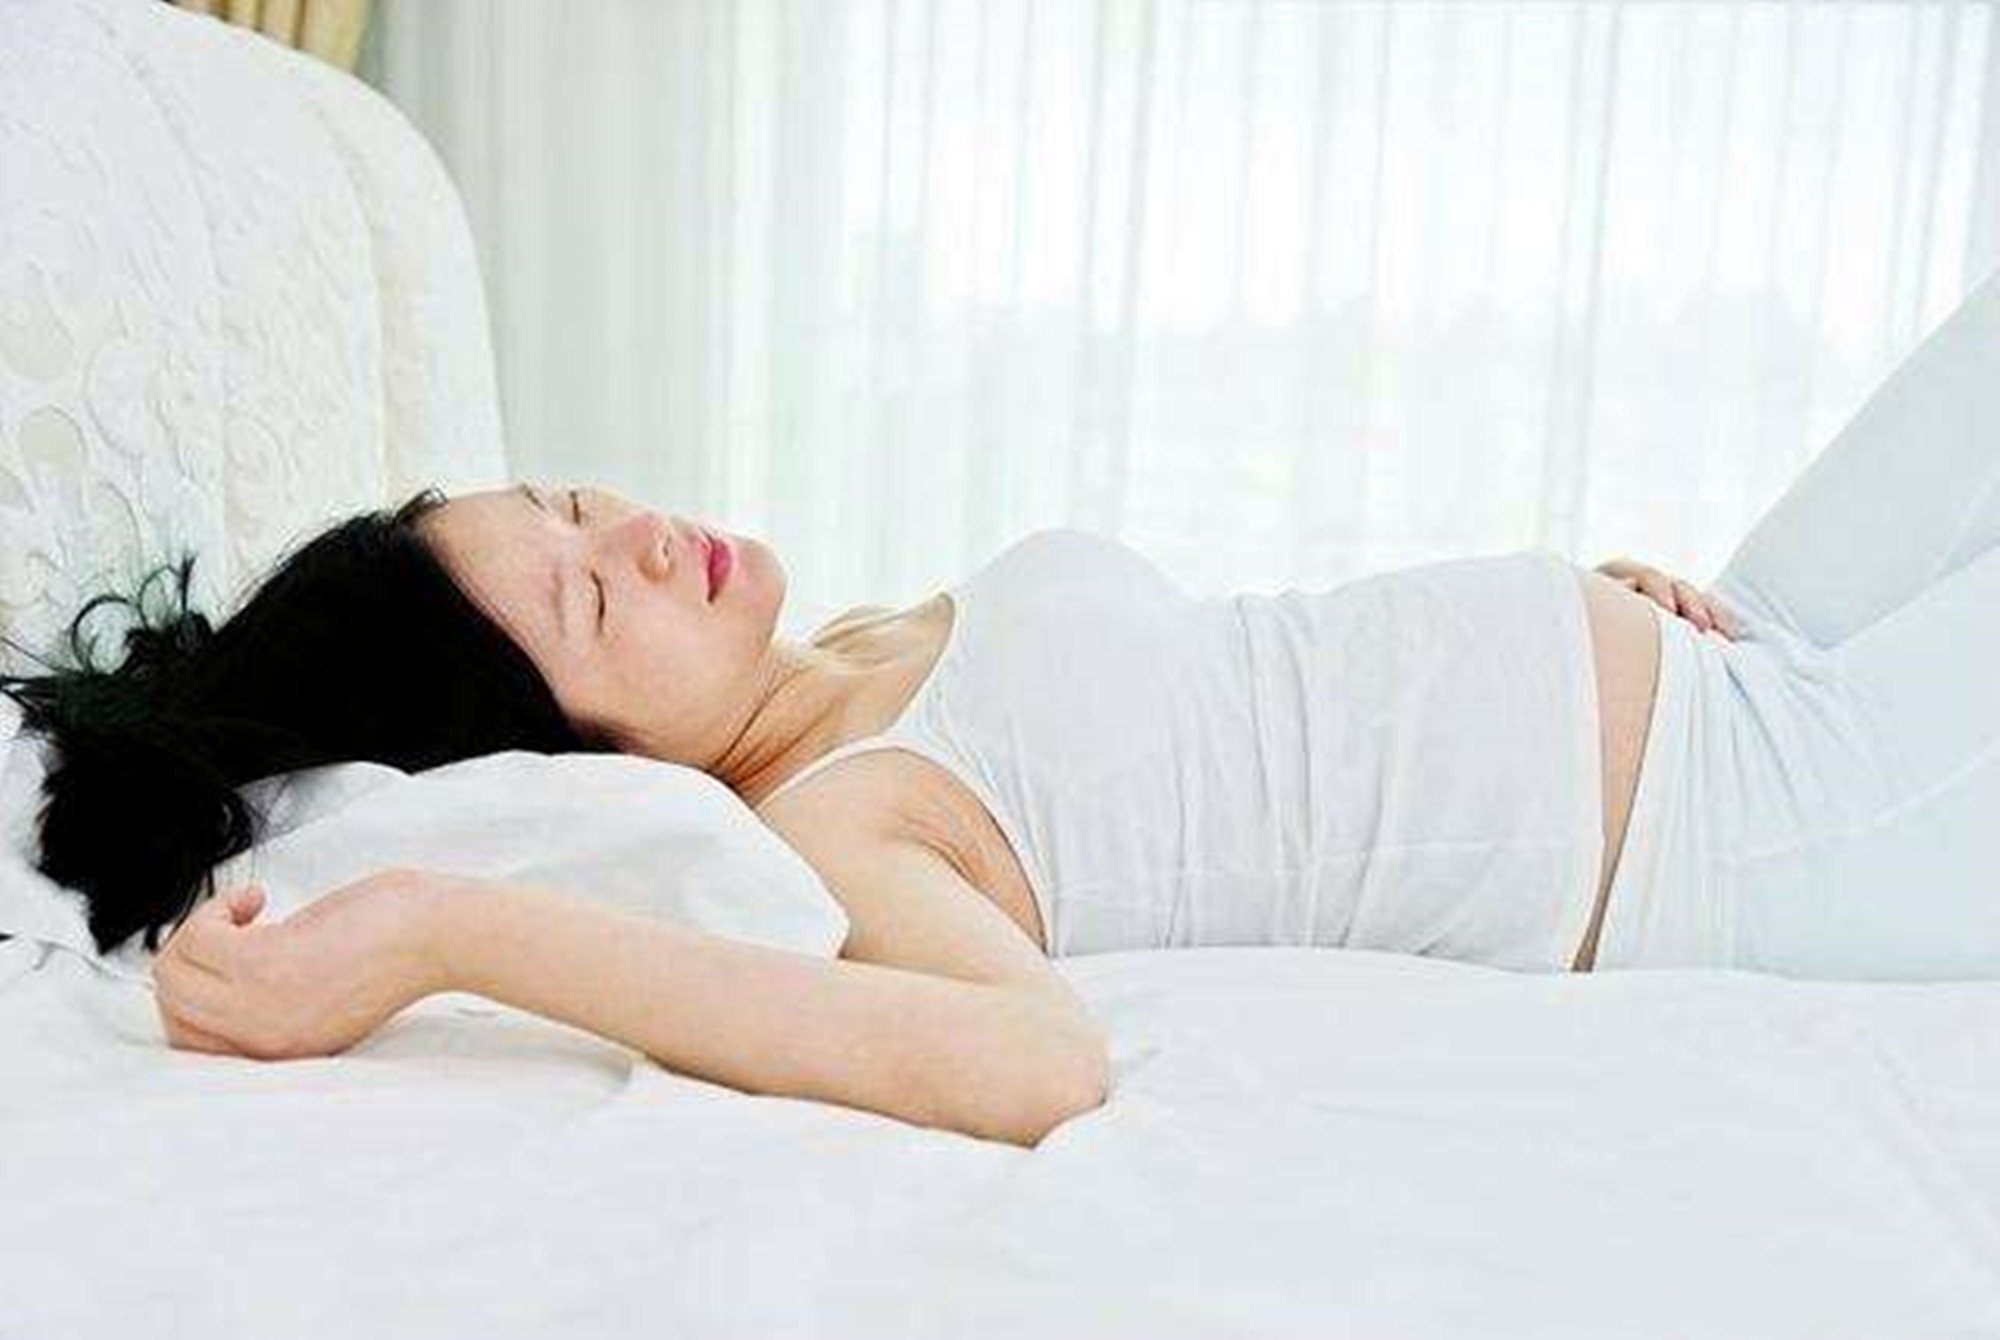 孕晚期睡眠障碍频发?彻夜难眠影响生活质量,改善刻不容缓